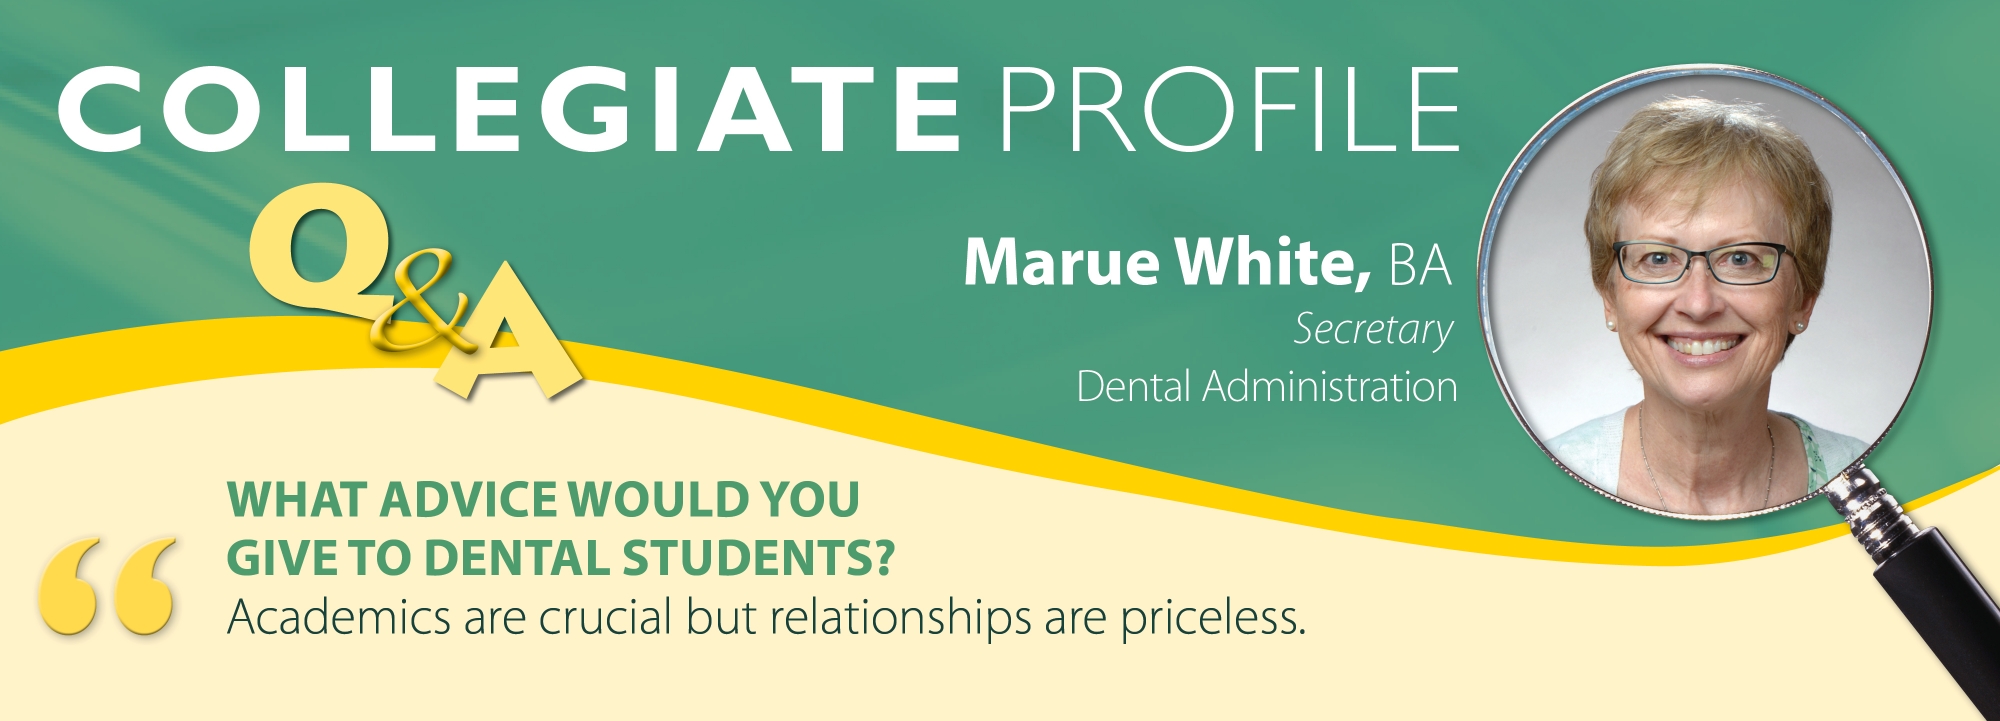 Marue White collegiate profile August